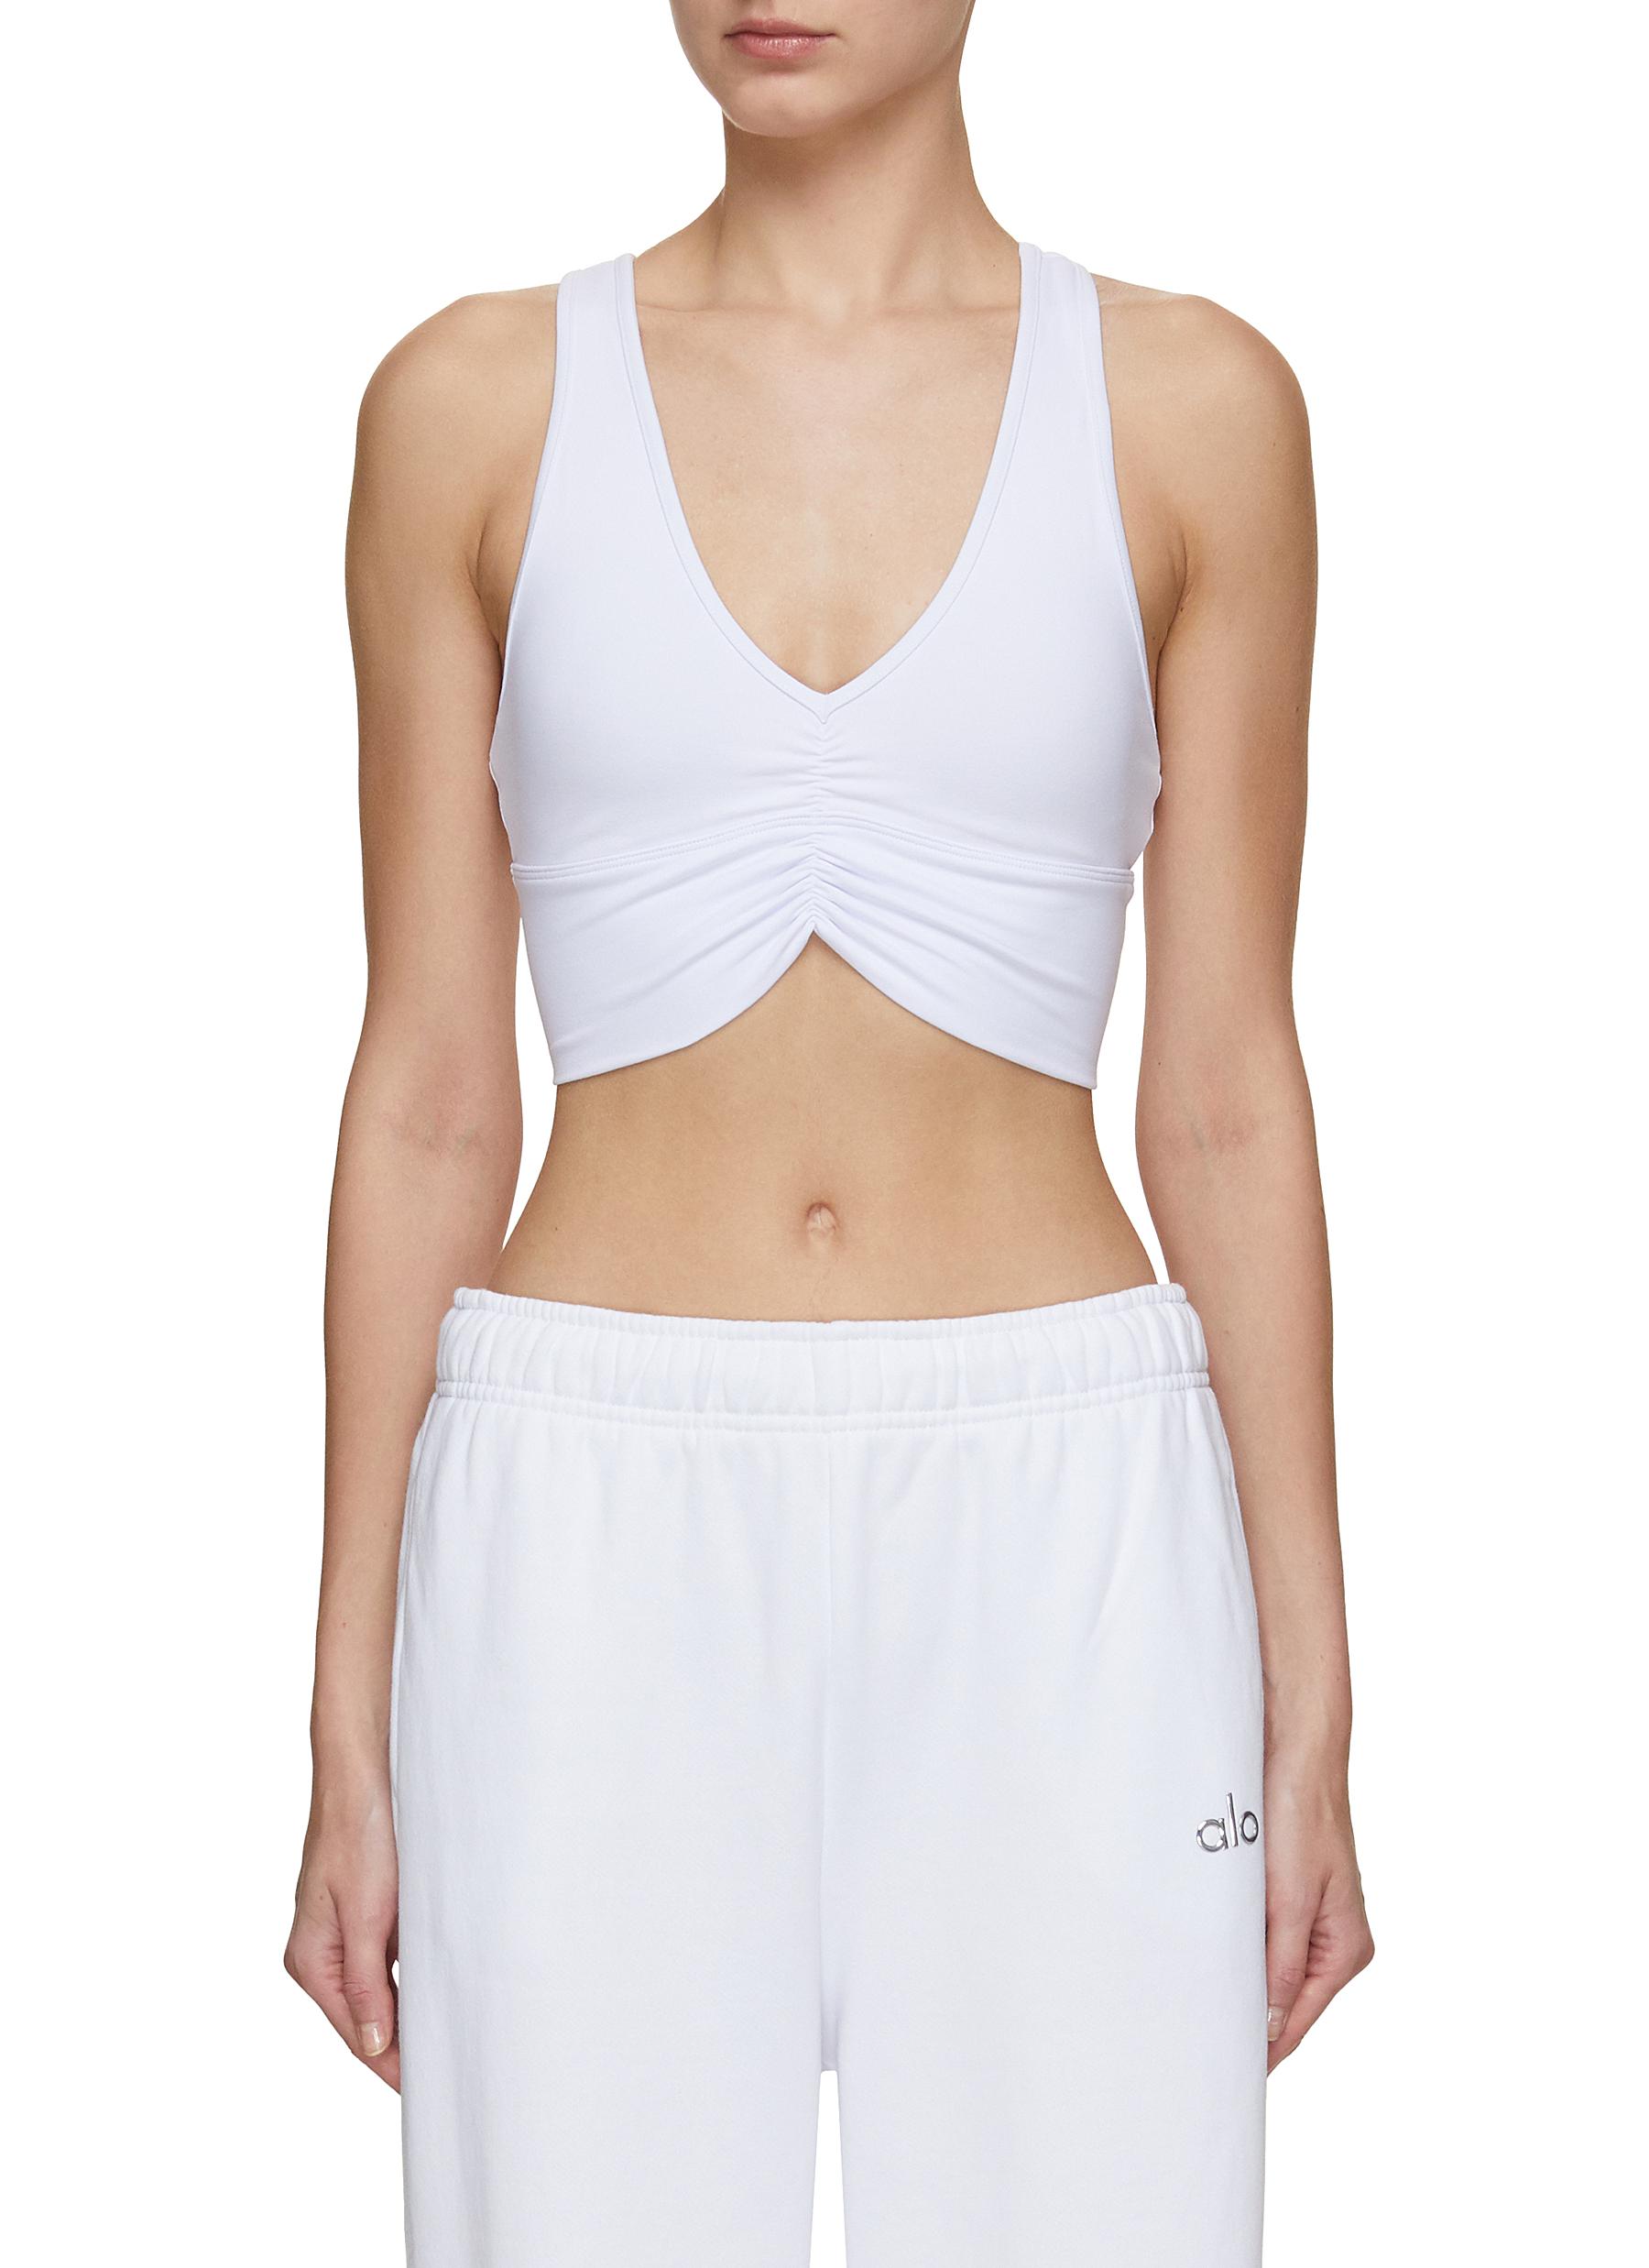 Wild Thing sports bra in white - Alo Yoga